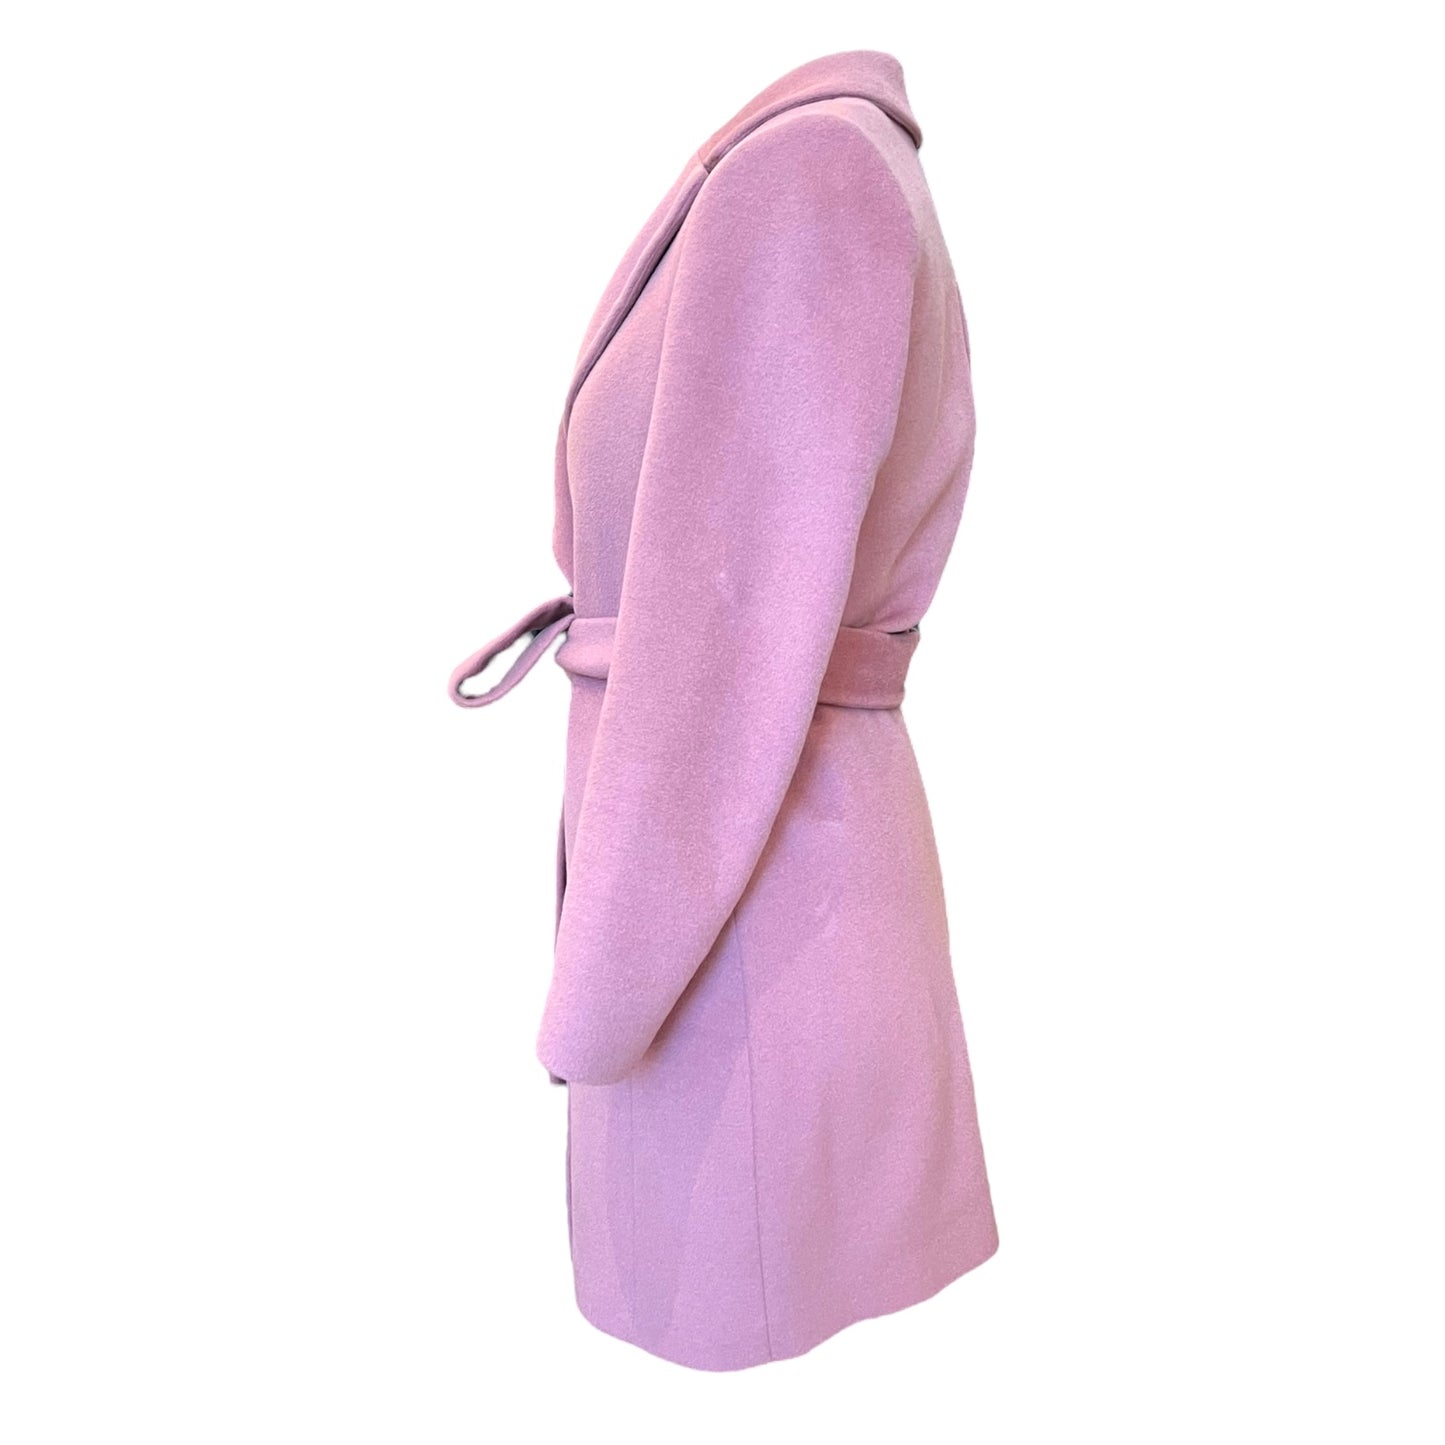 Reiss Pink Wool Coat